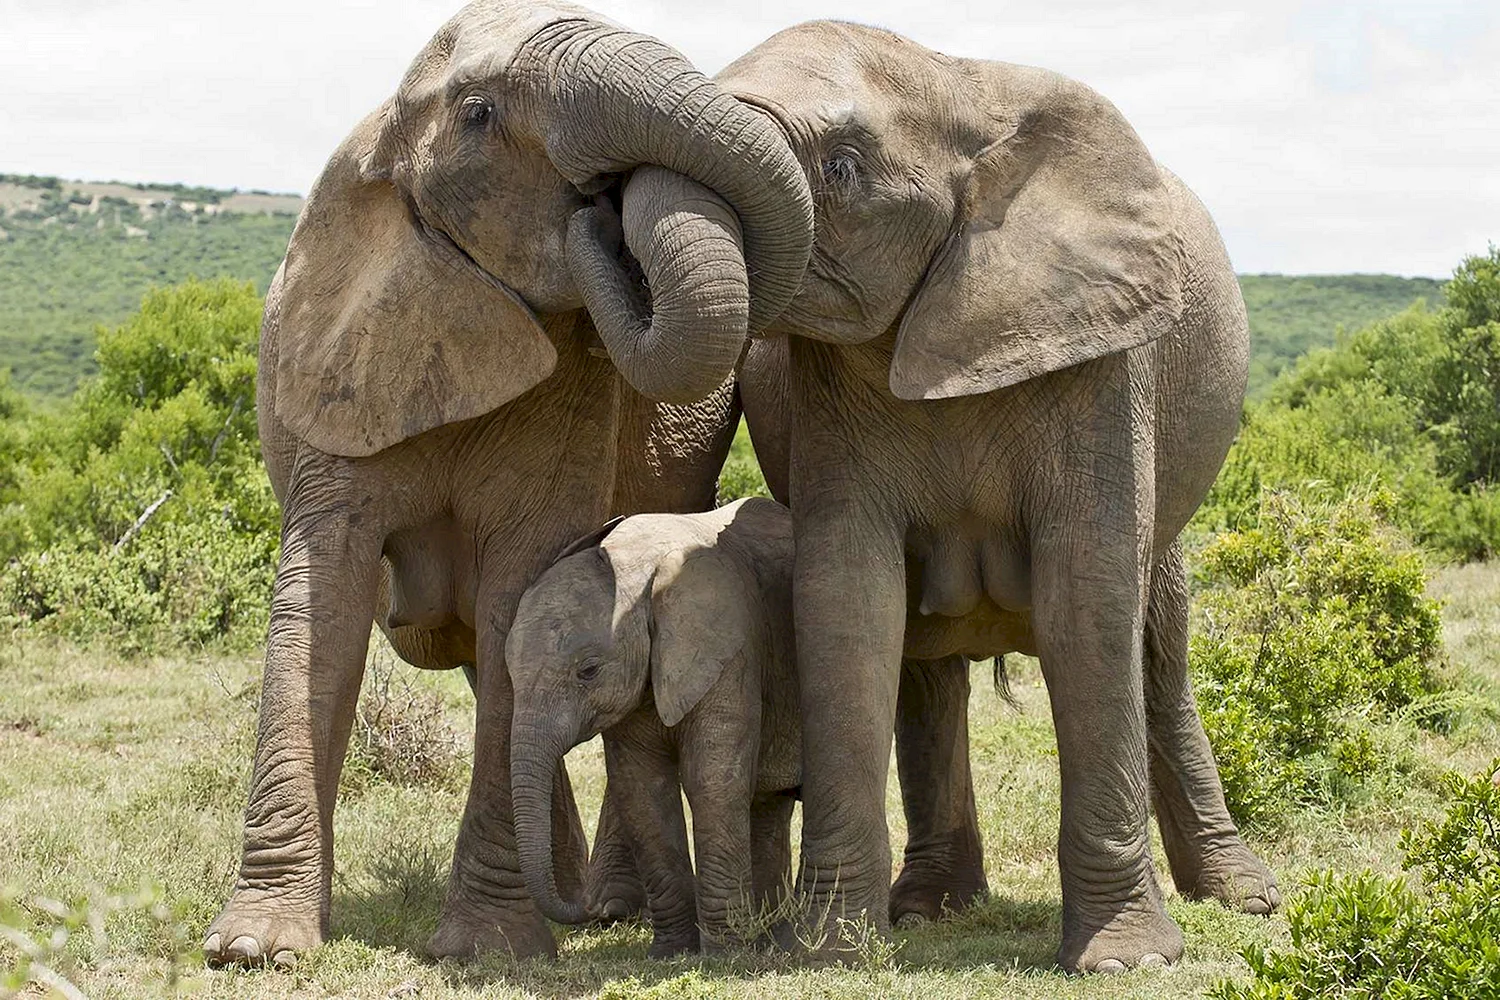 Семья слонов